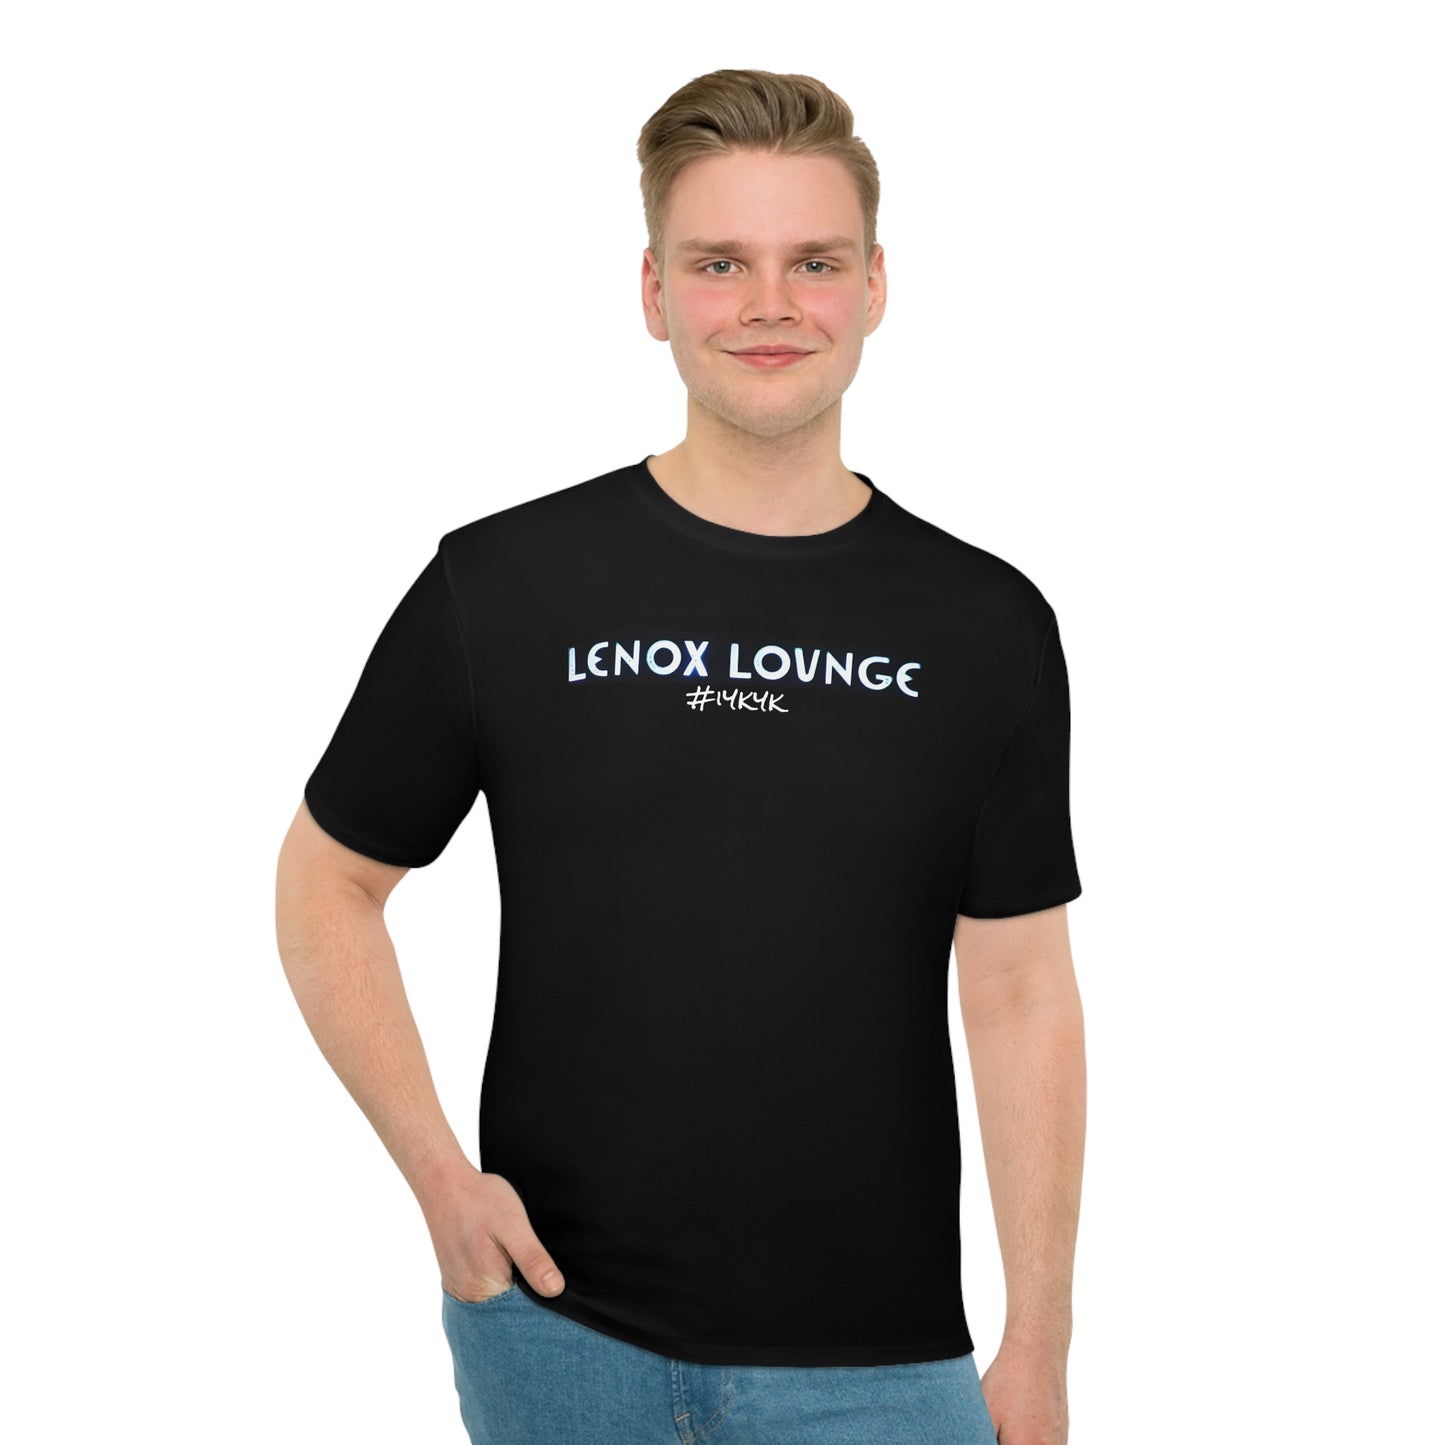 Lenox Lounge Men's Black T-shirt